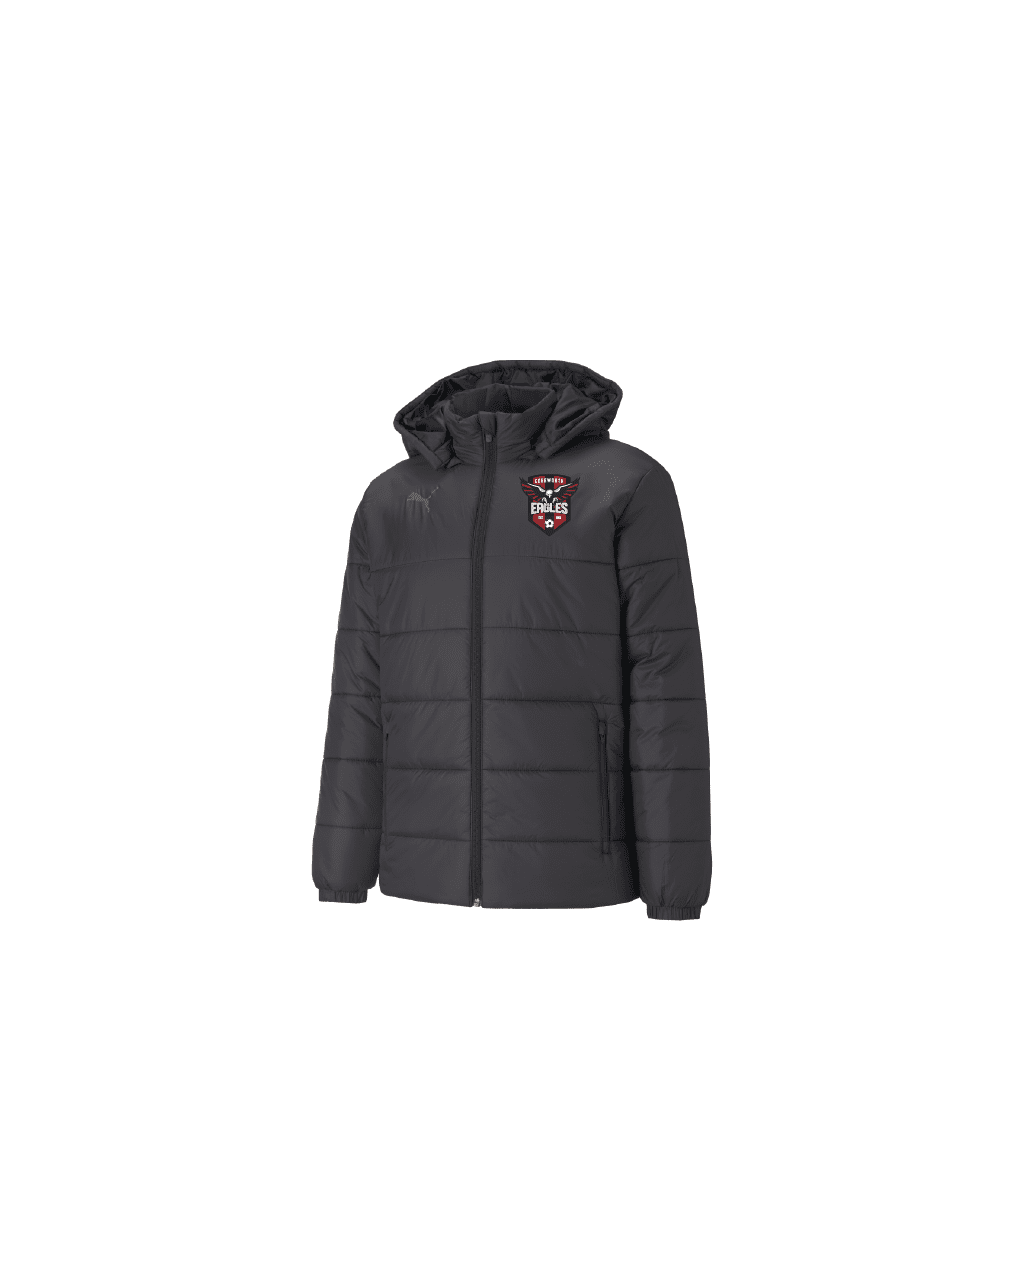 Puma liga padded jacket black with logo - Edgeworth FC - Sportsclique Shop